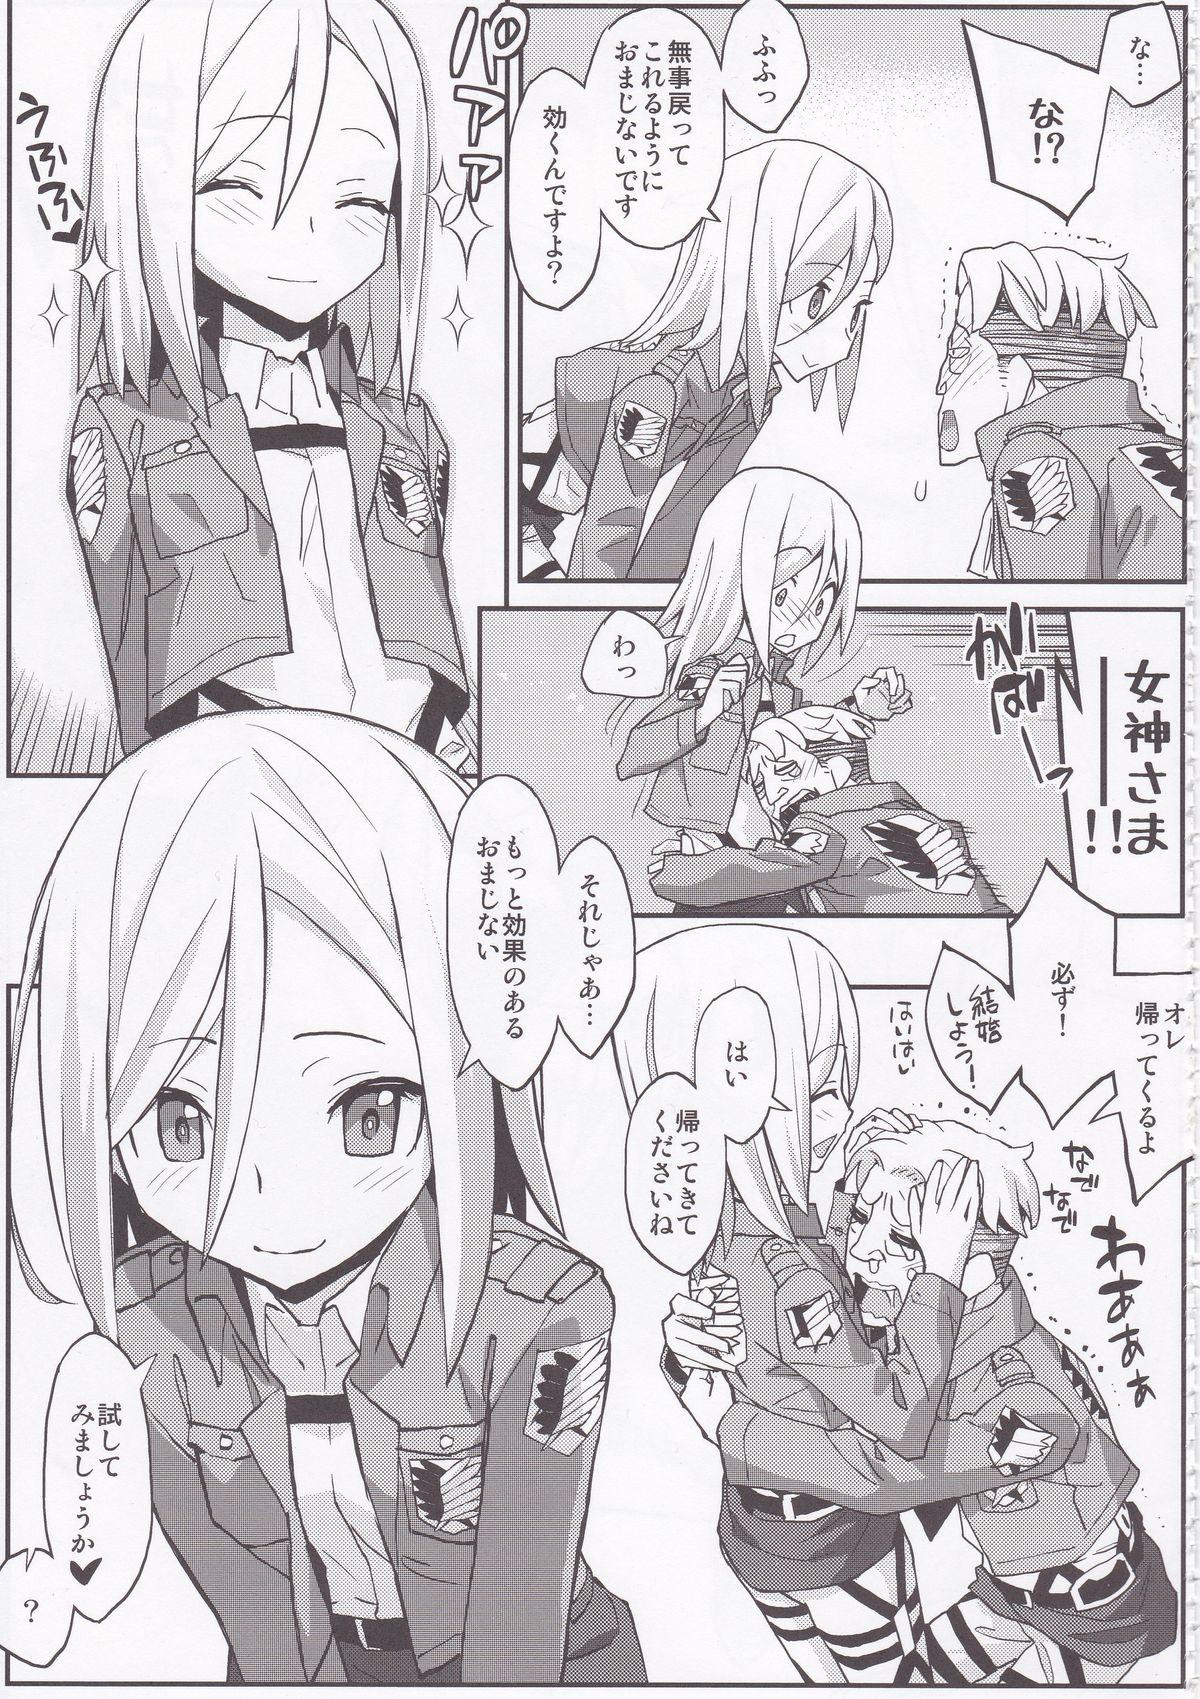 Rubbing Shingeki no Megami - Shingeki no kyojin Delicia - Page 7